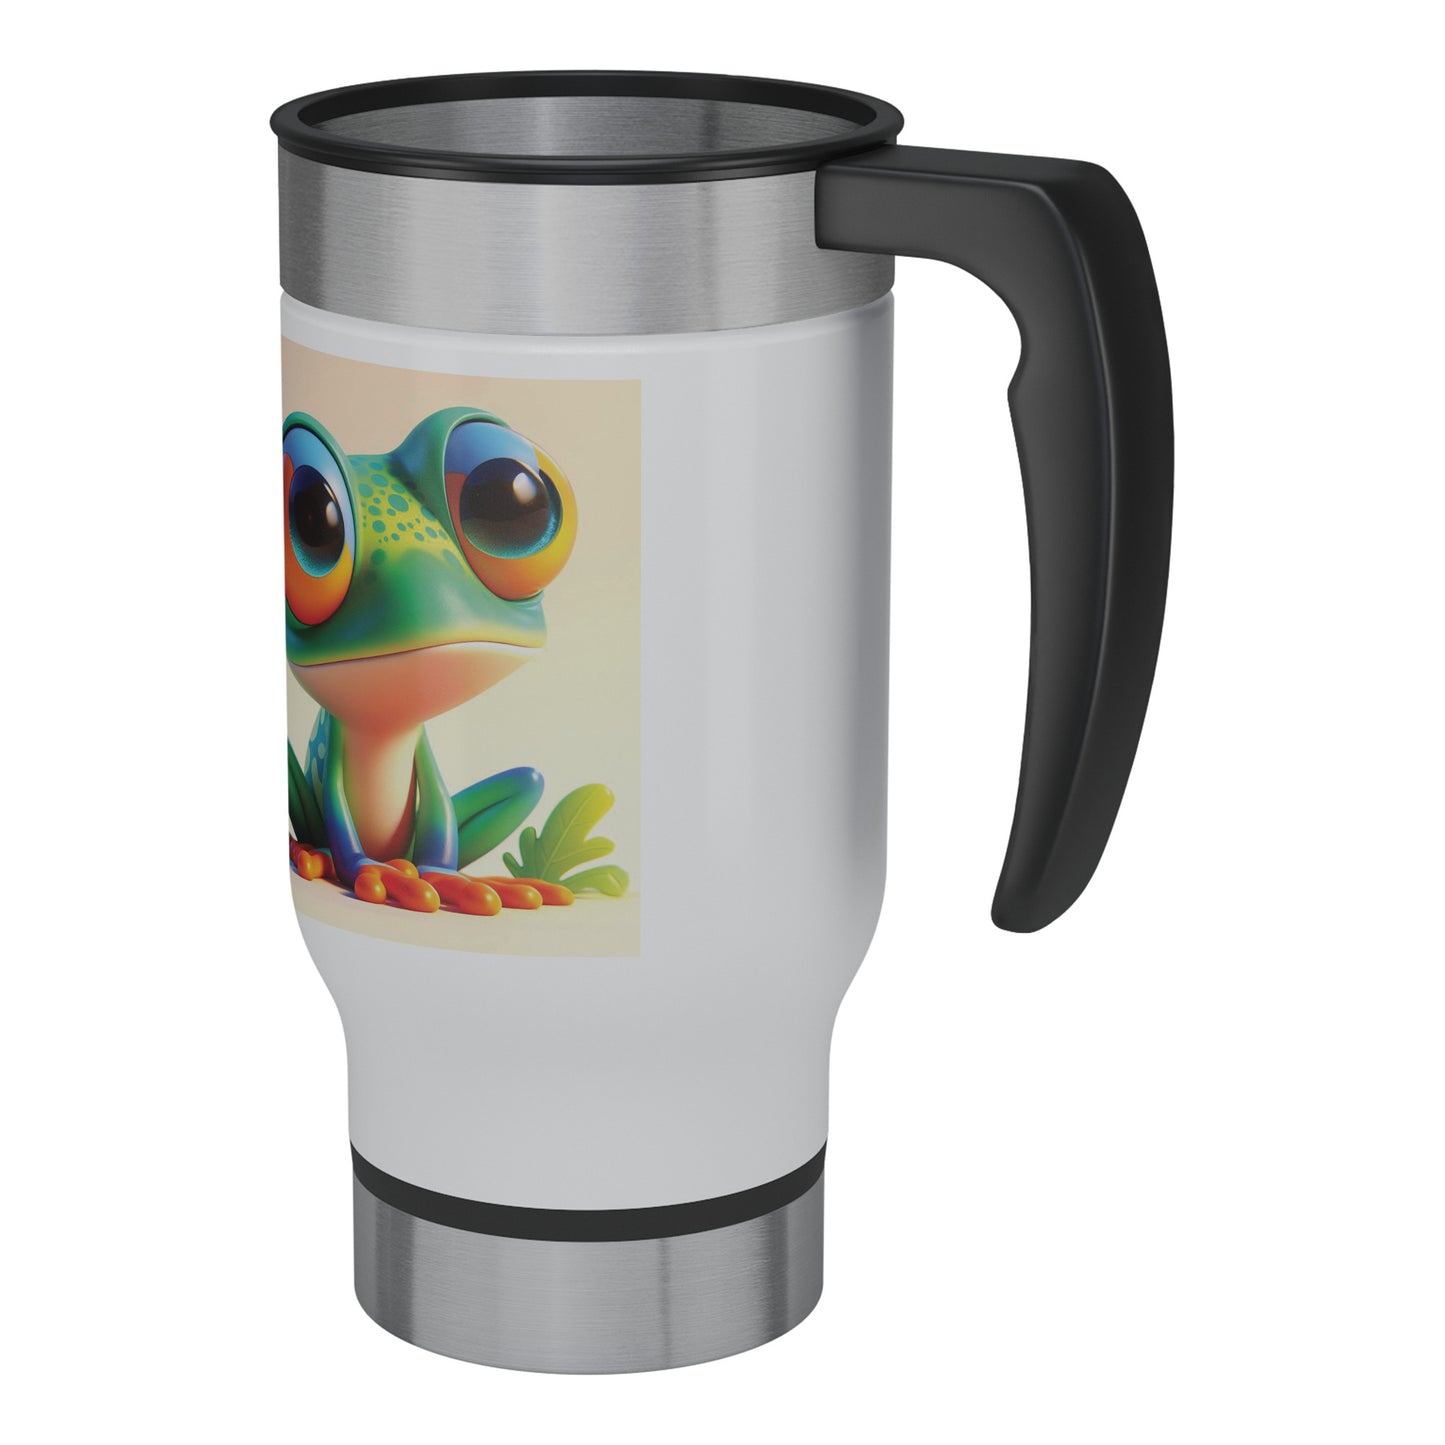 Cute & Adorable Amphibians - 14oz Travel Mug - Frog #1